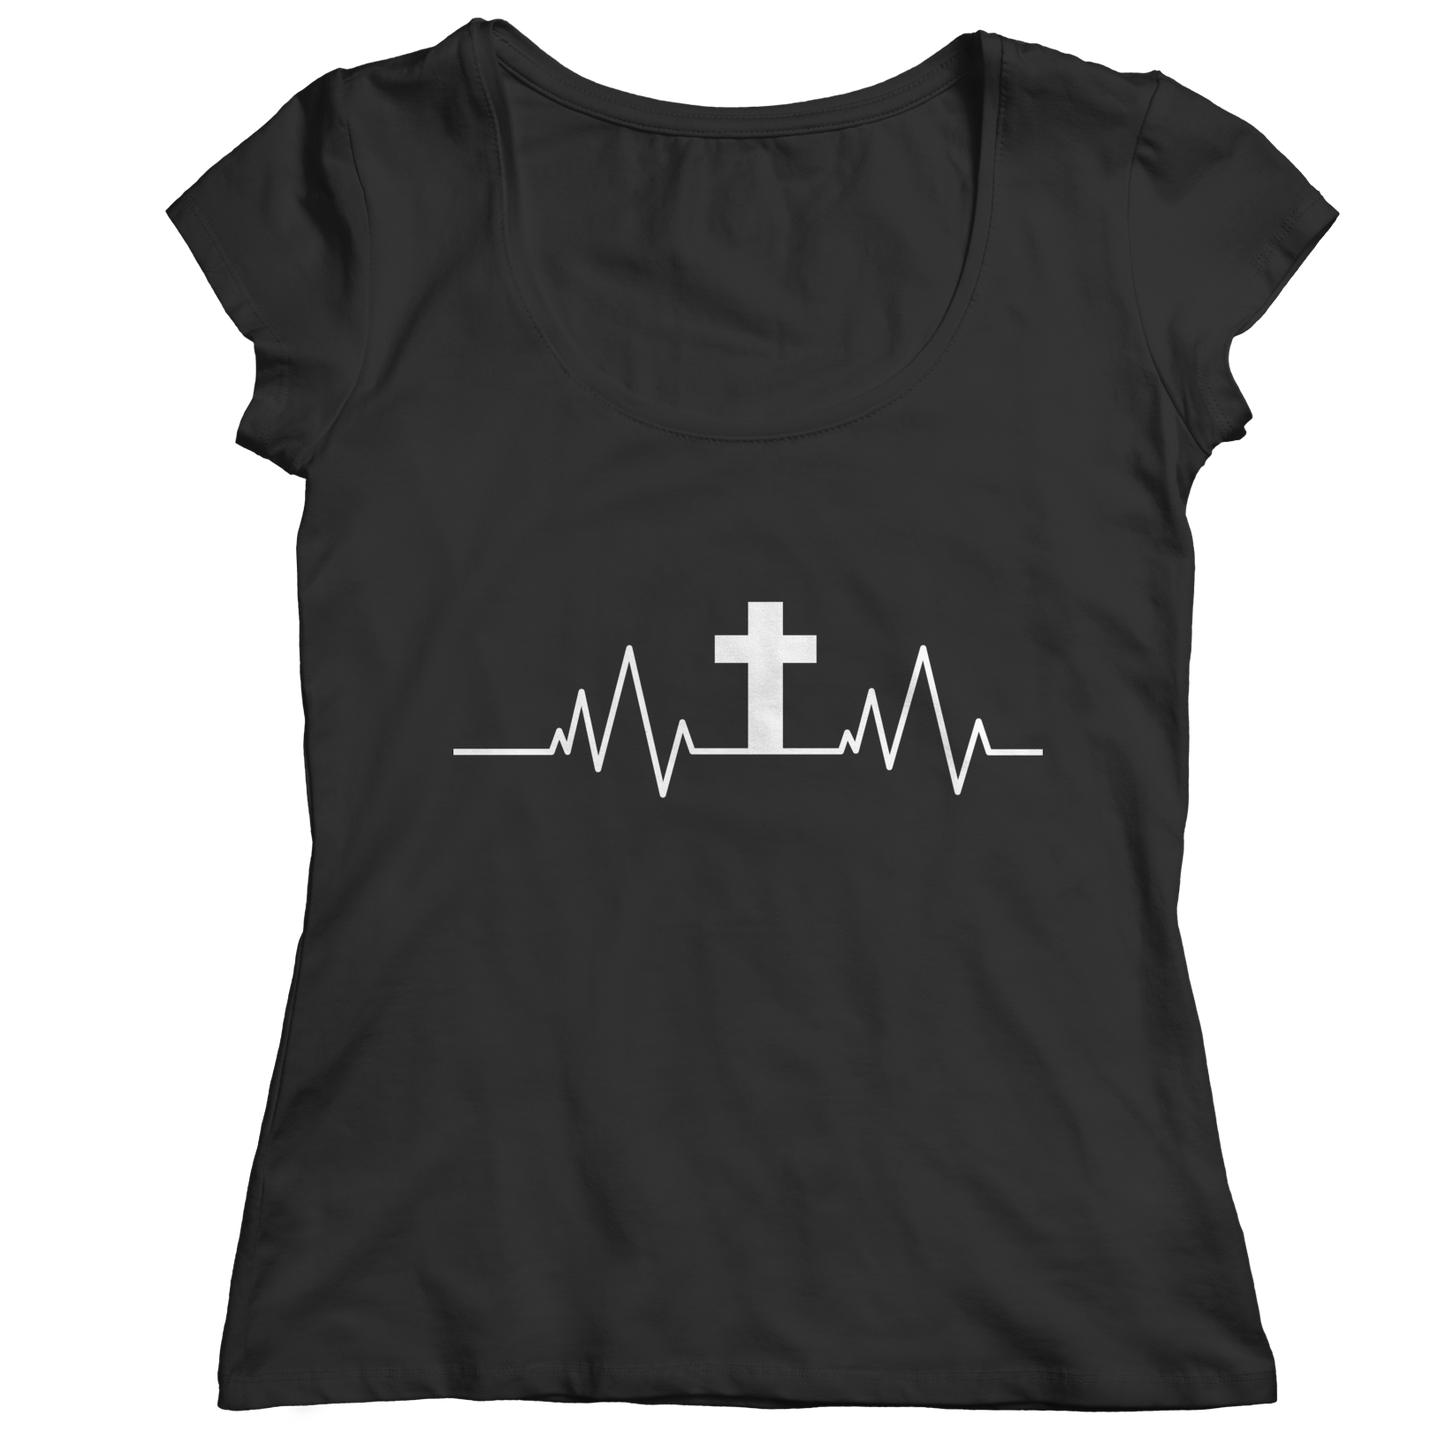 Unisex Shirt - Christian Heartbeat Cross T-Shirt